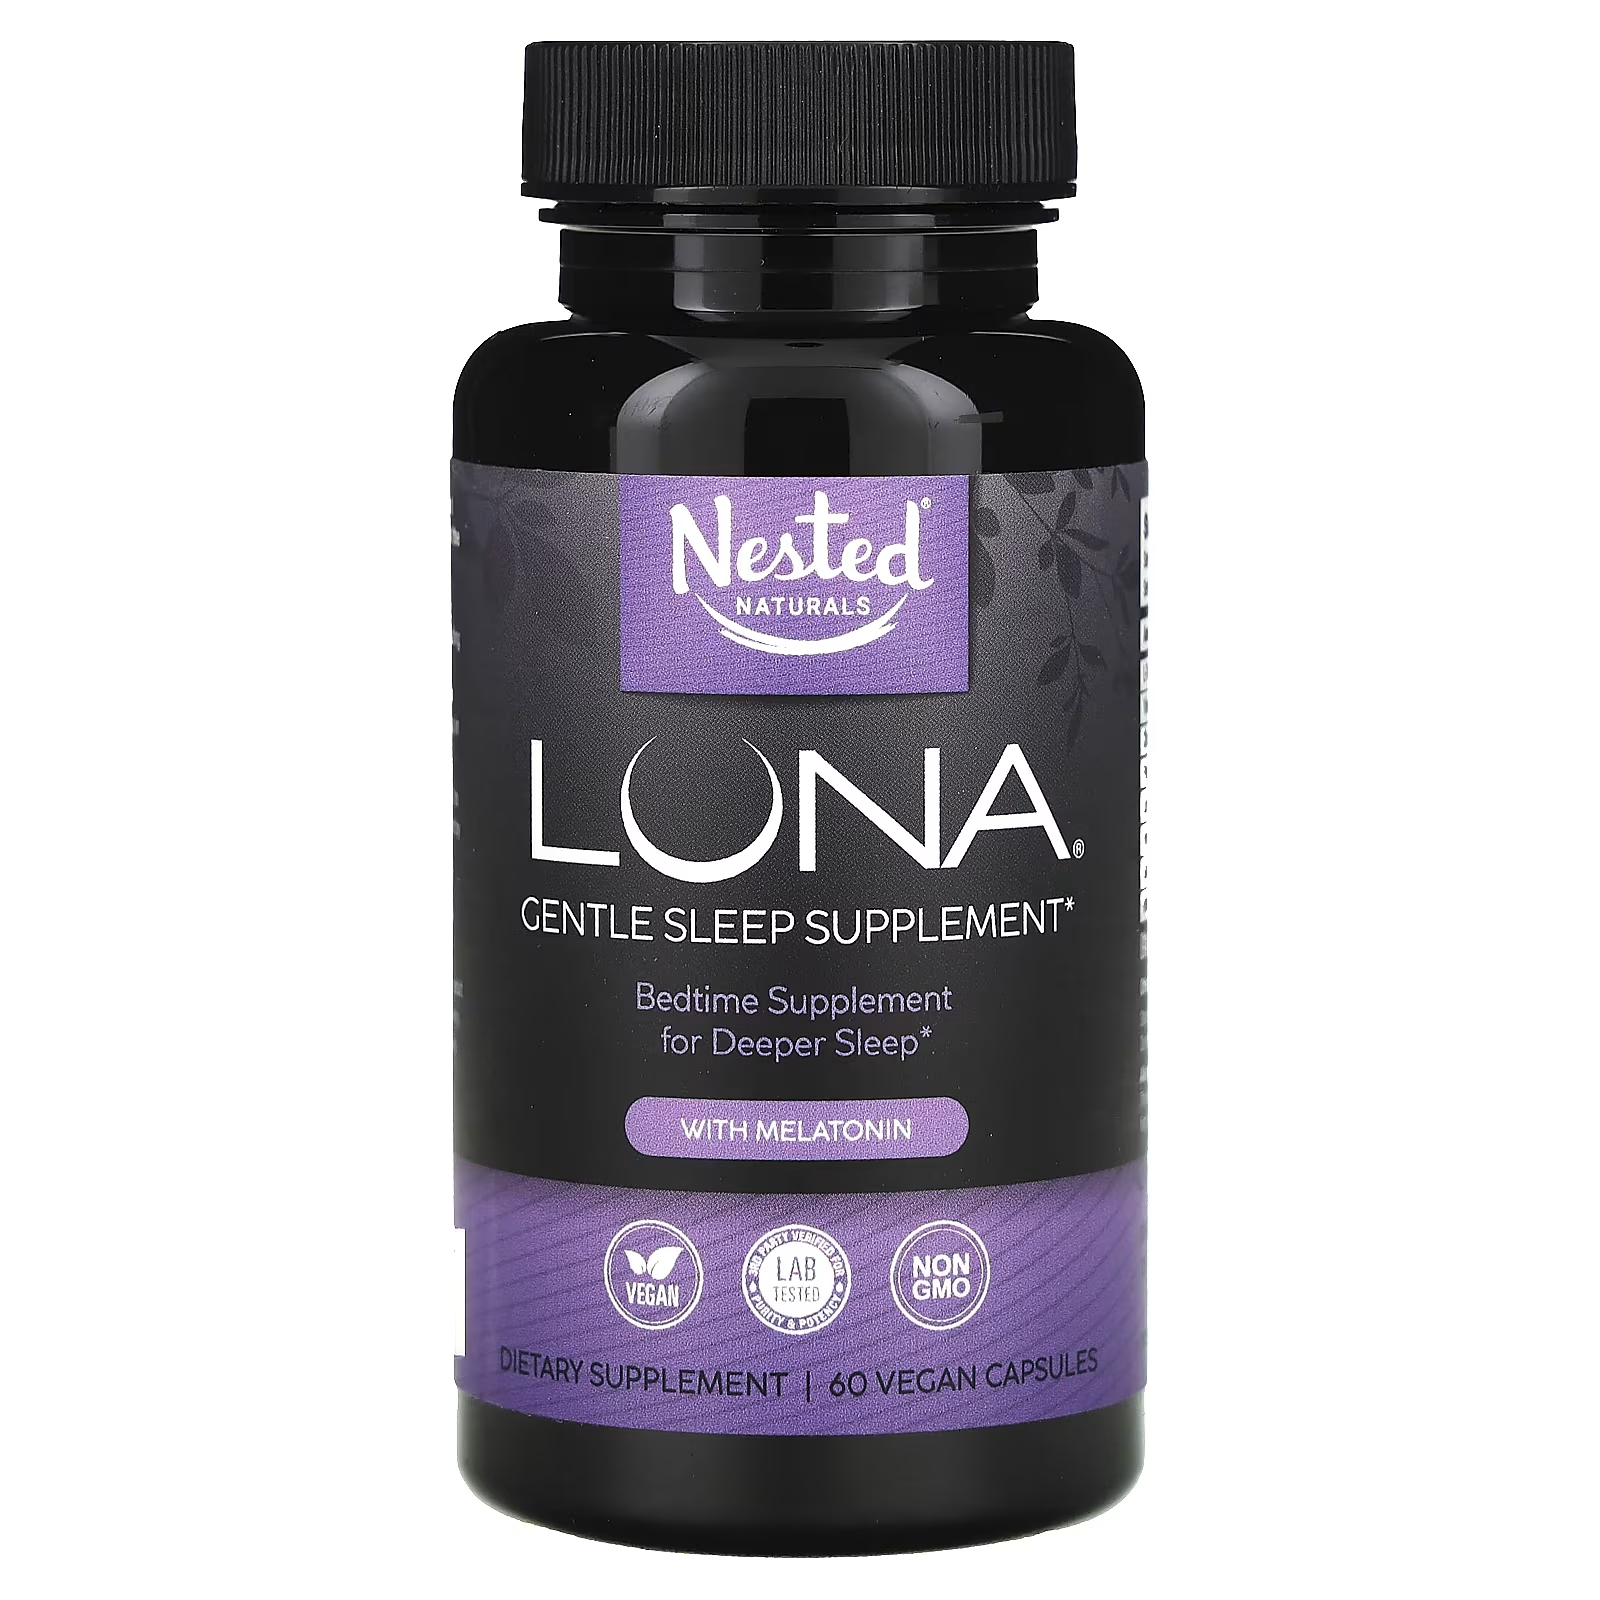 Nested Naturals Luna Нежная добавка для сна с мелатонином, 60 капсул